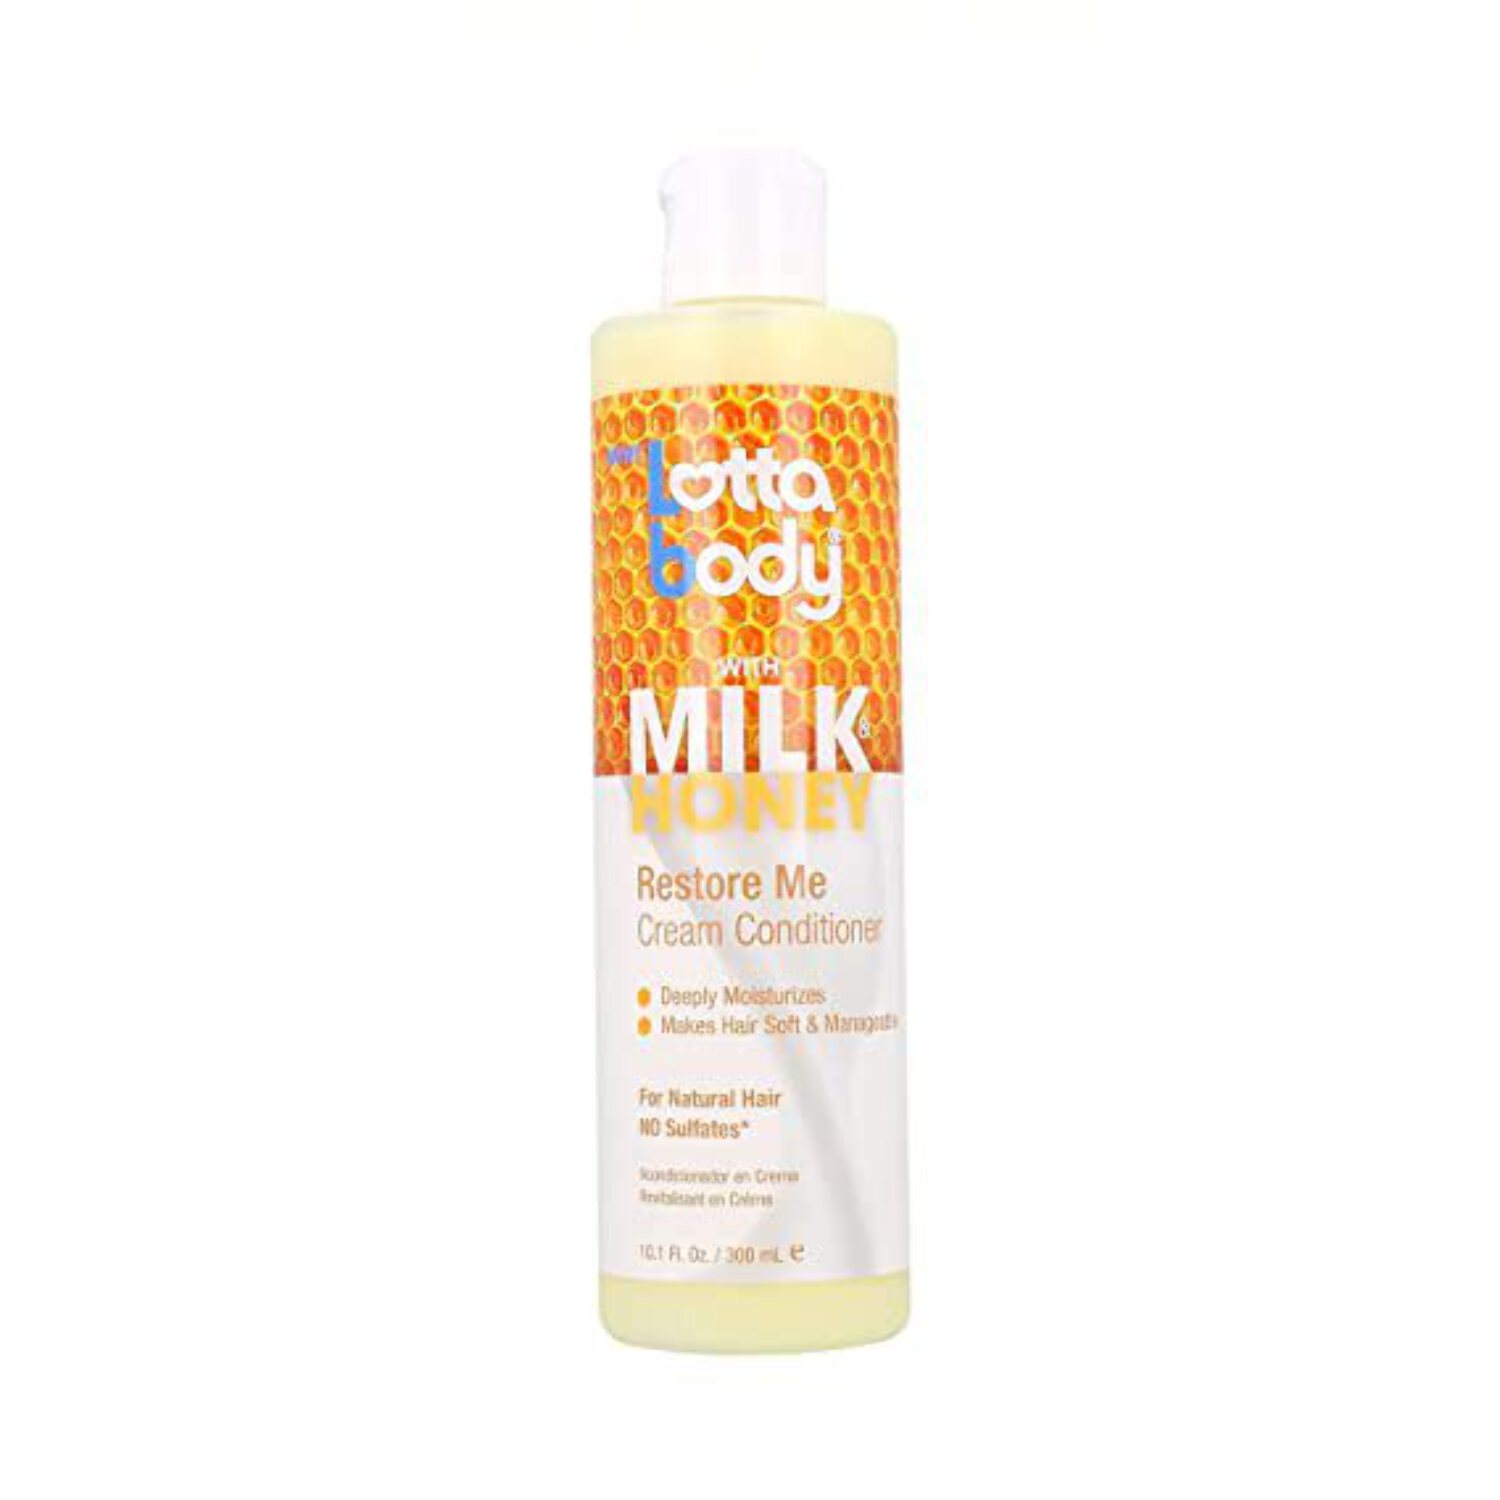 Lotta Body - Milk Honey Restore Me Cream Conditioner - image 2 of 2